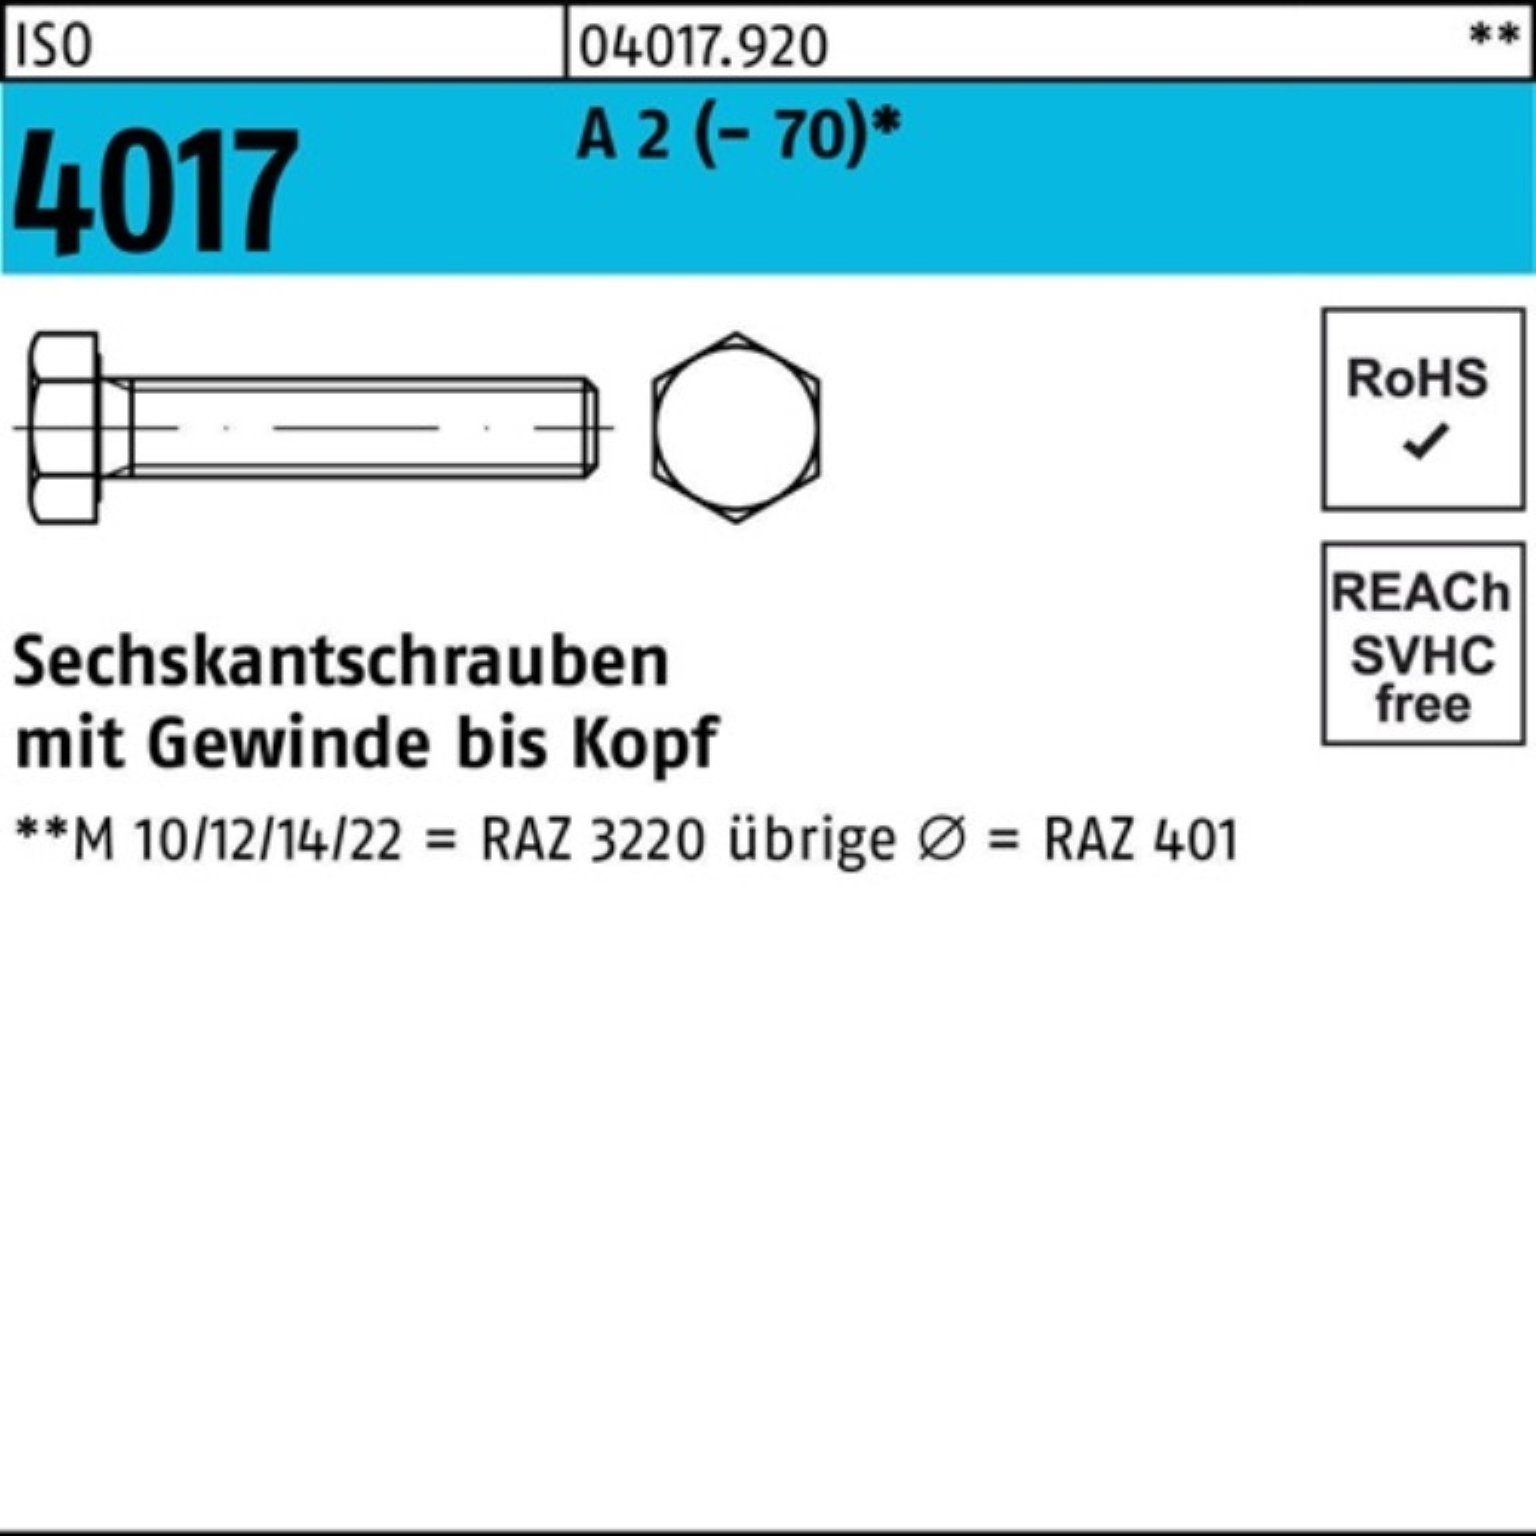 Bufab Sechskantschraube 100er Pack Sechskantschraube ISO 4017 VG M12x 35 A 2 (70) 100 Stück